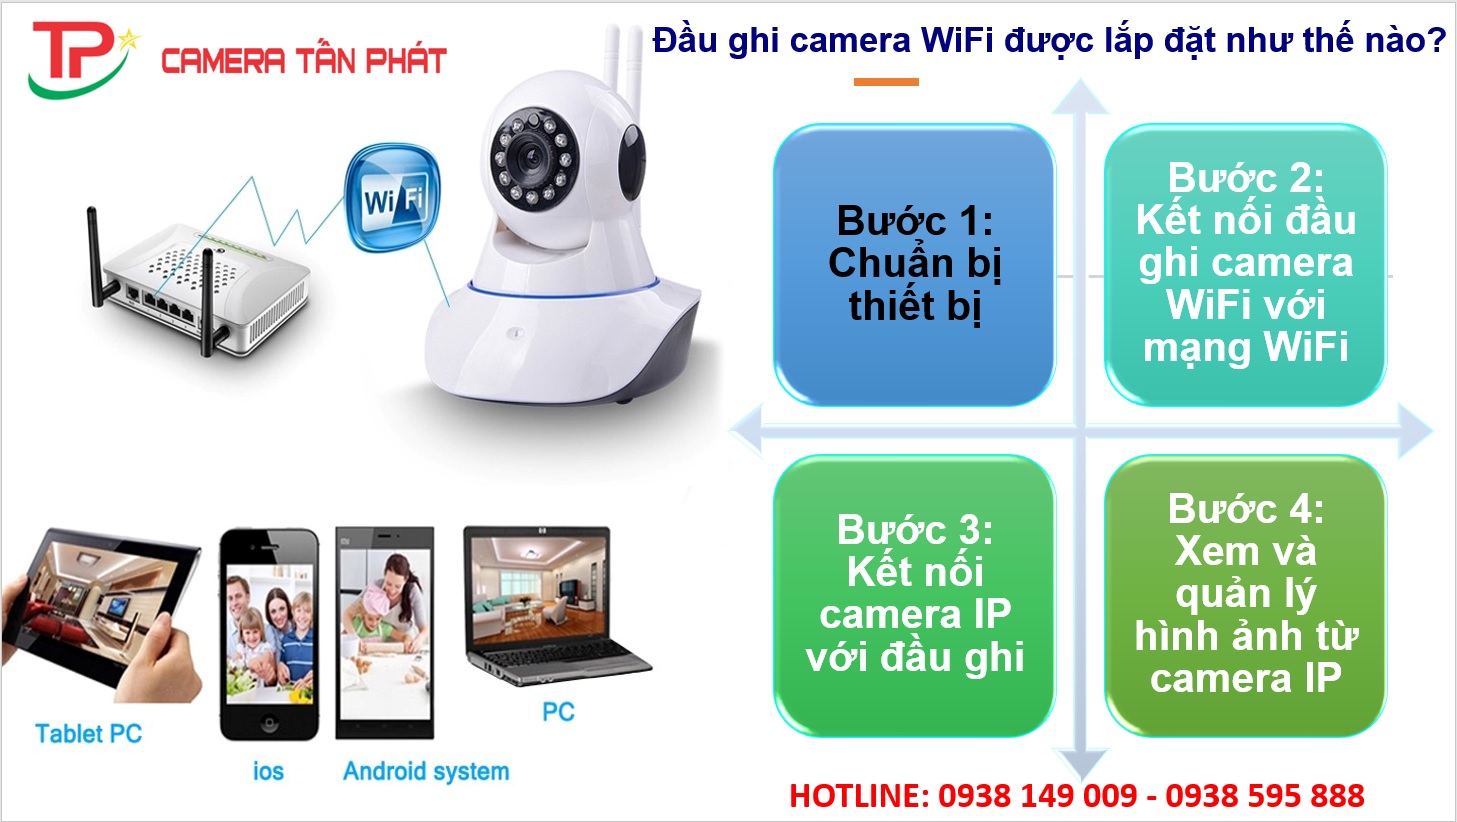 Dau Ghi Camera Wifi Duoc Lap Dat Nhu The Nao